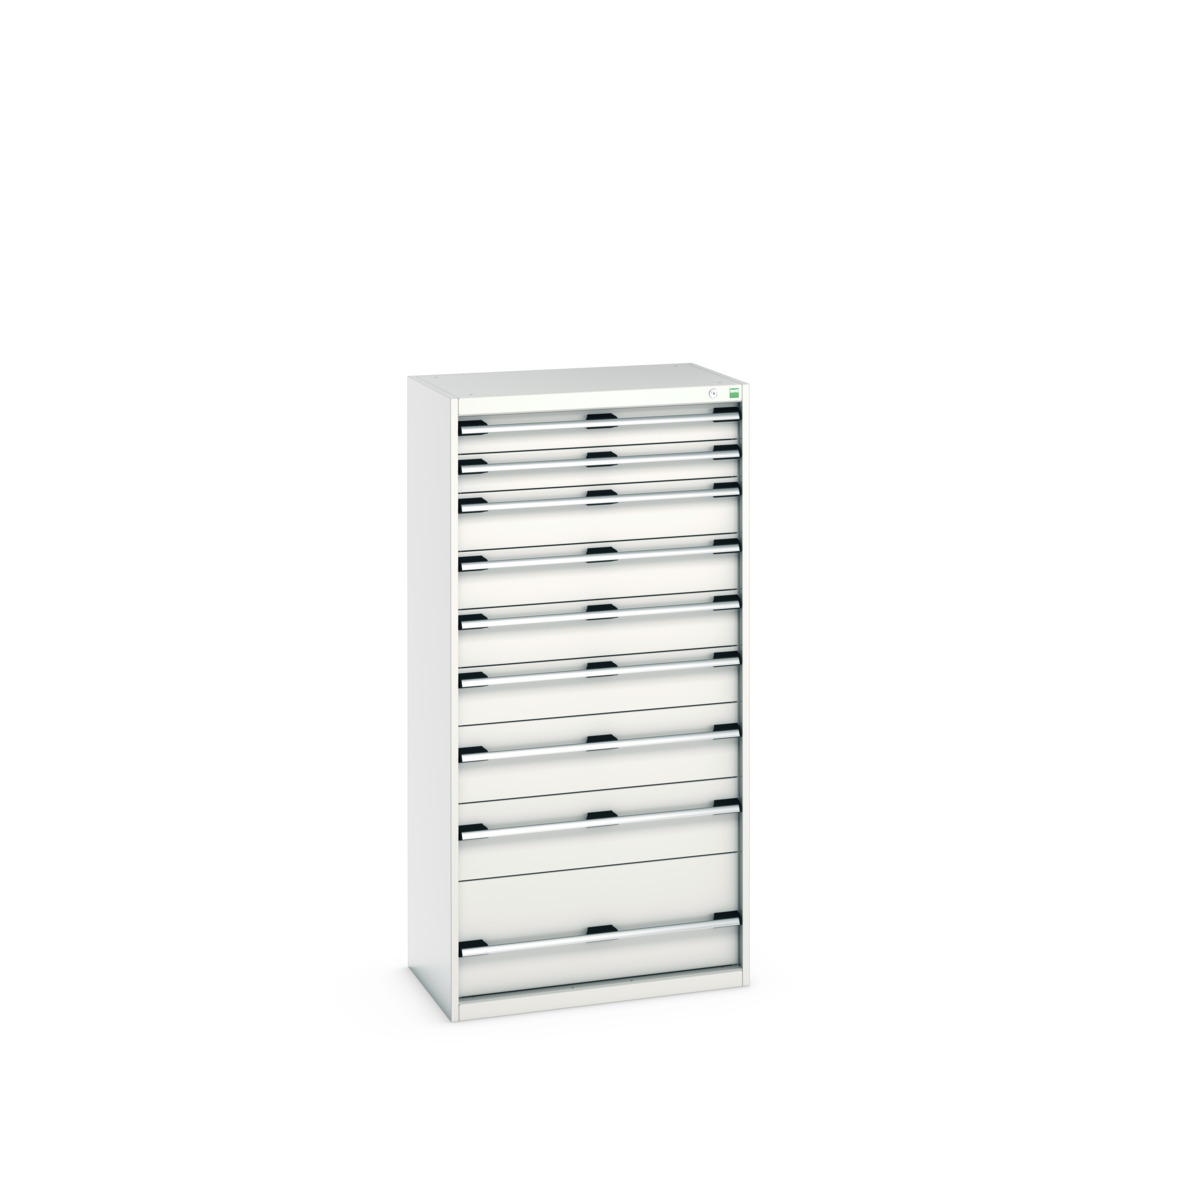 40012110.16V - cubio drawer cabinet